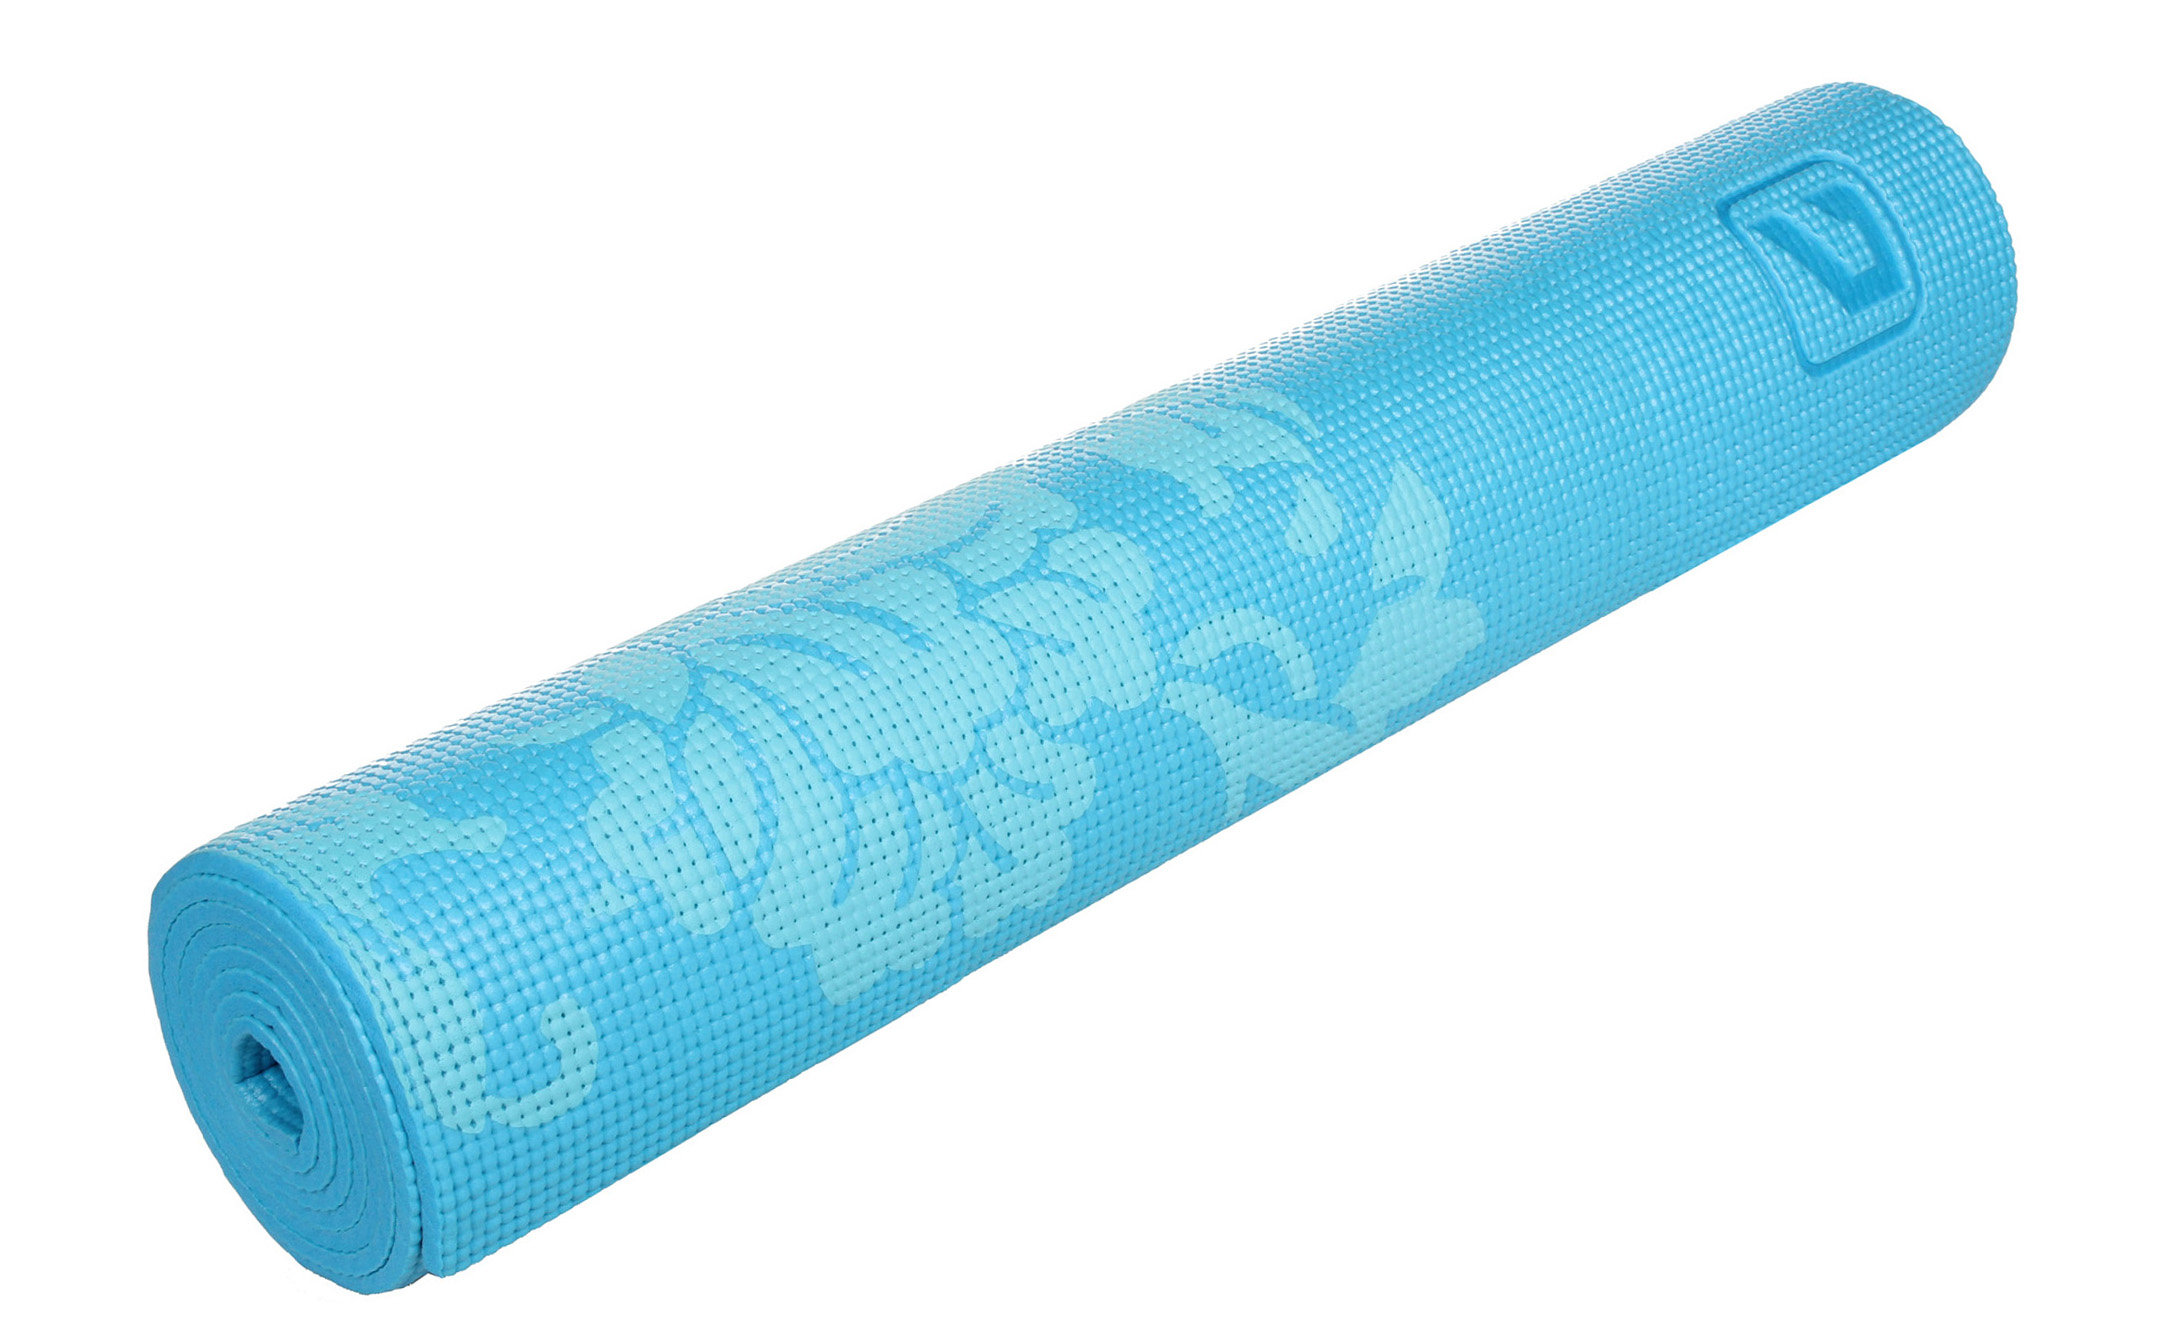 LIVEUP Коврик для йоги PVC Yoga Mat Printed Blue 6 мм Артикул: LS3231c-06b